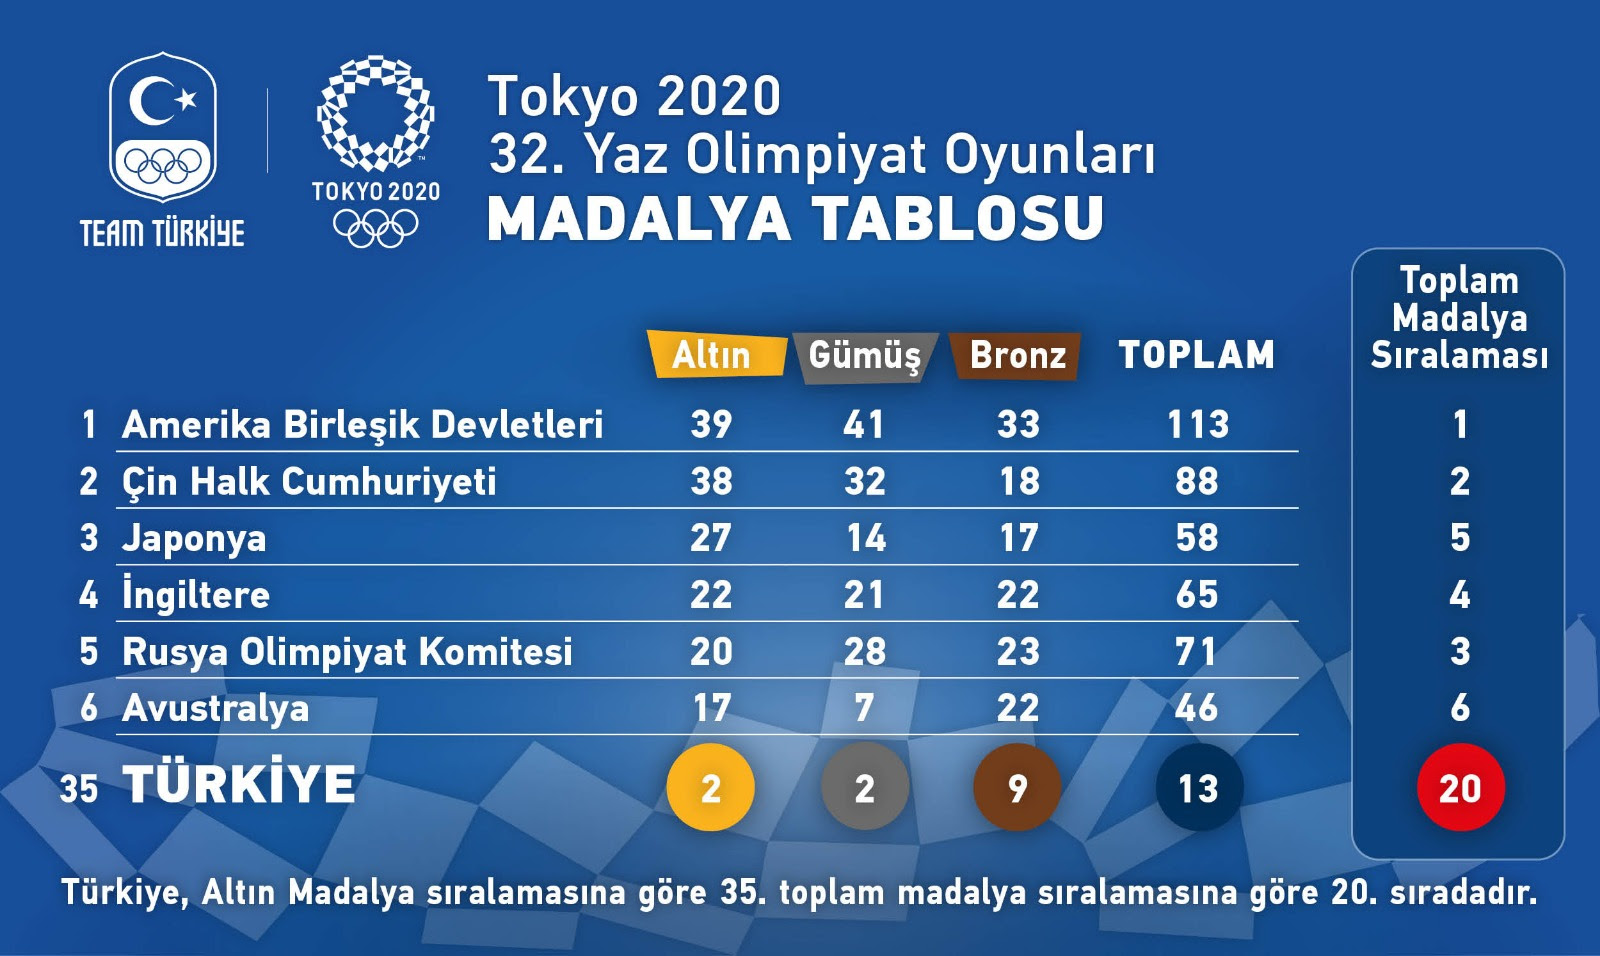 2020 Tokyo Olimpiyatları Türkiye Raporu madalya sıralamasını yansıtan bir görsel.